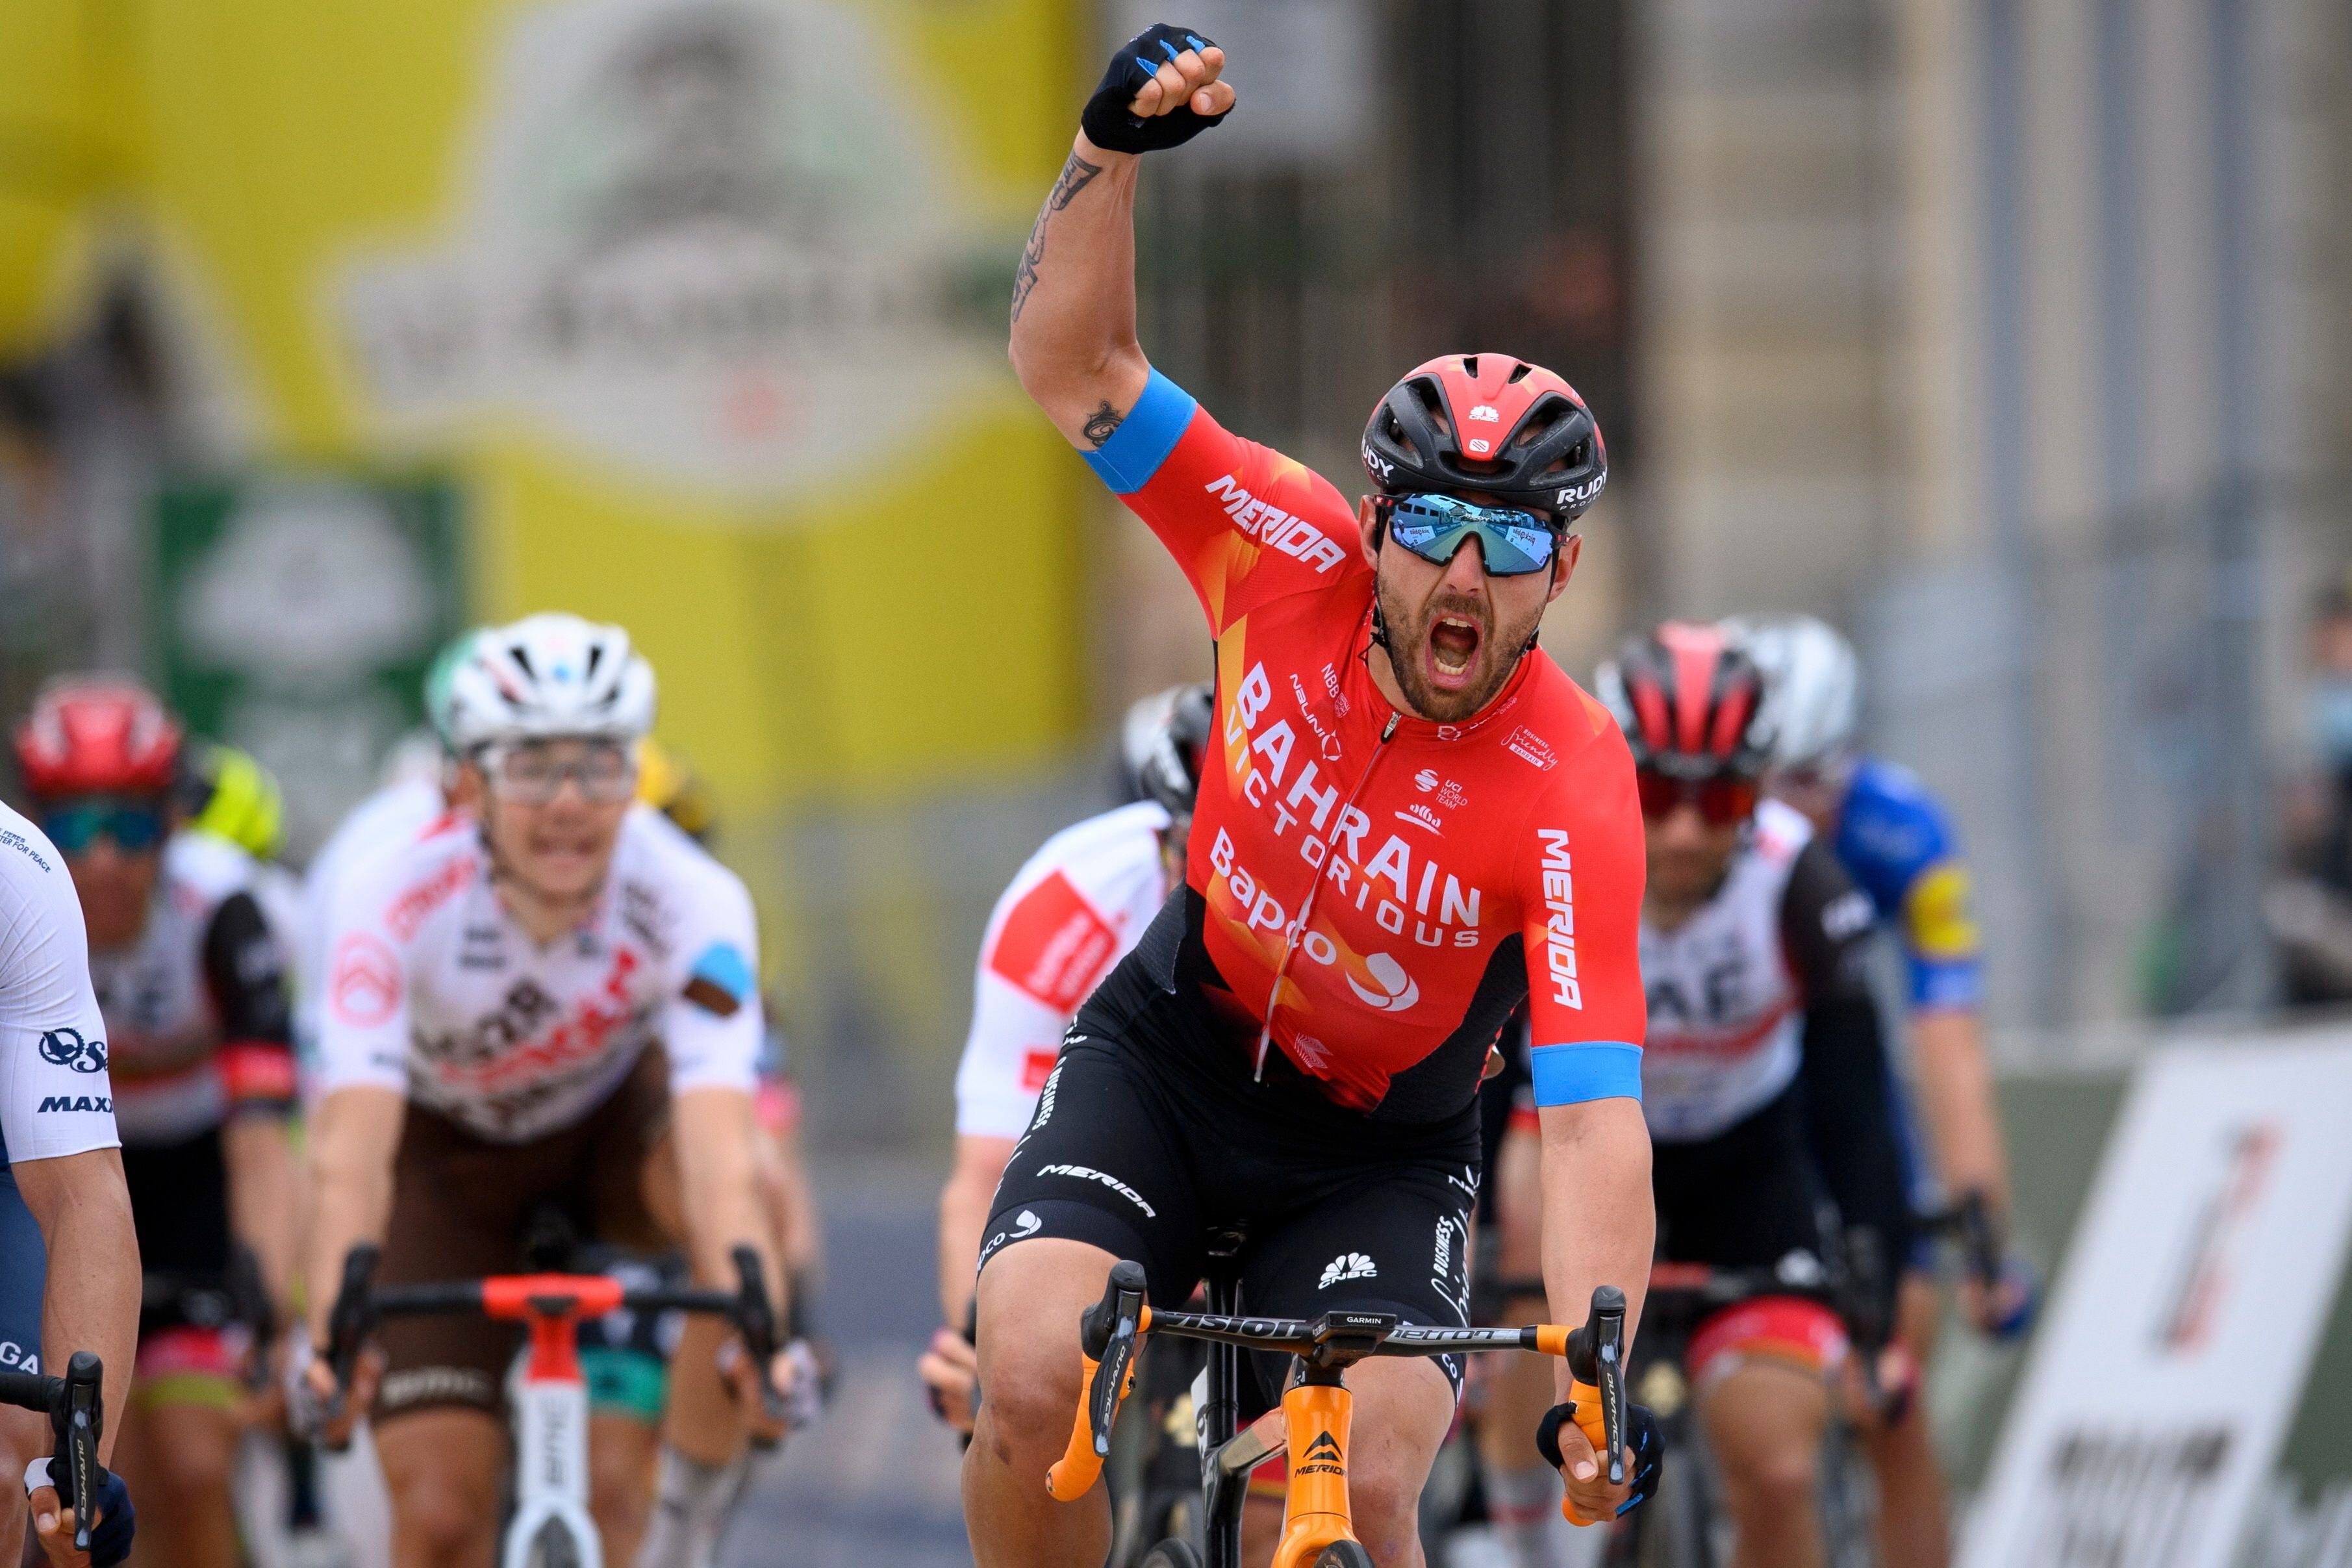 Colbrelli remató en el embalaje y ganó la segunda etapa del Tour de Romandía. EFE/EPA/JEAN-CHRISTOPHE BOTT
